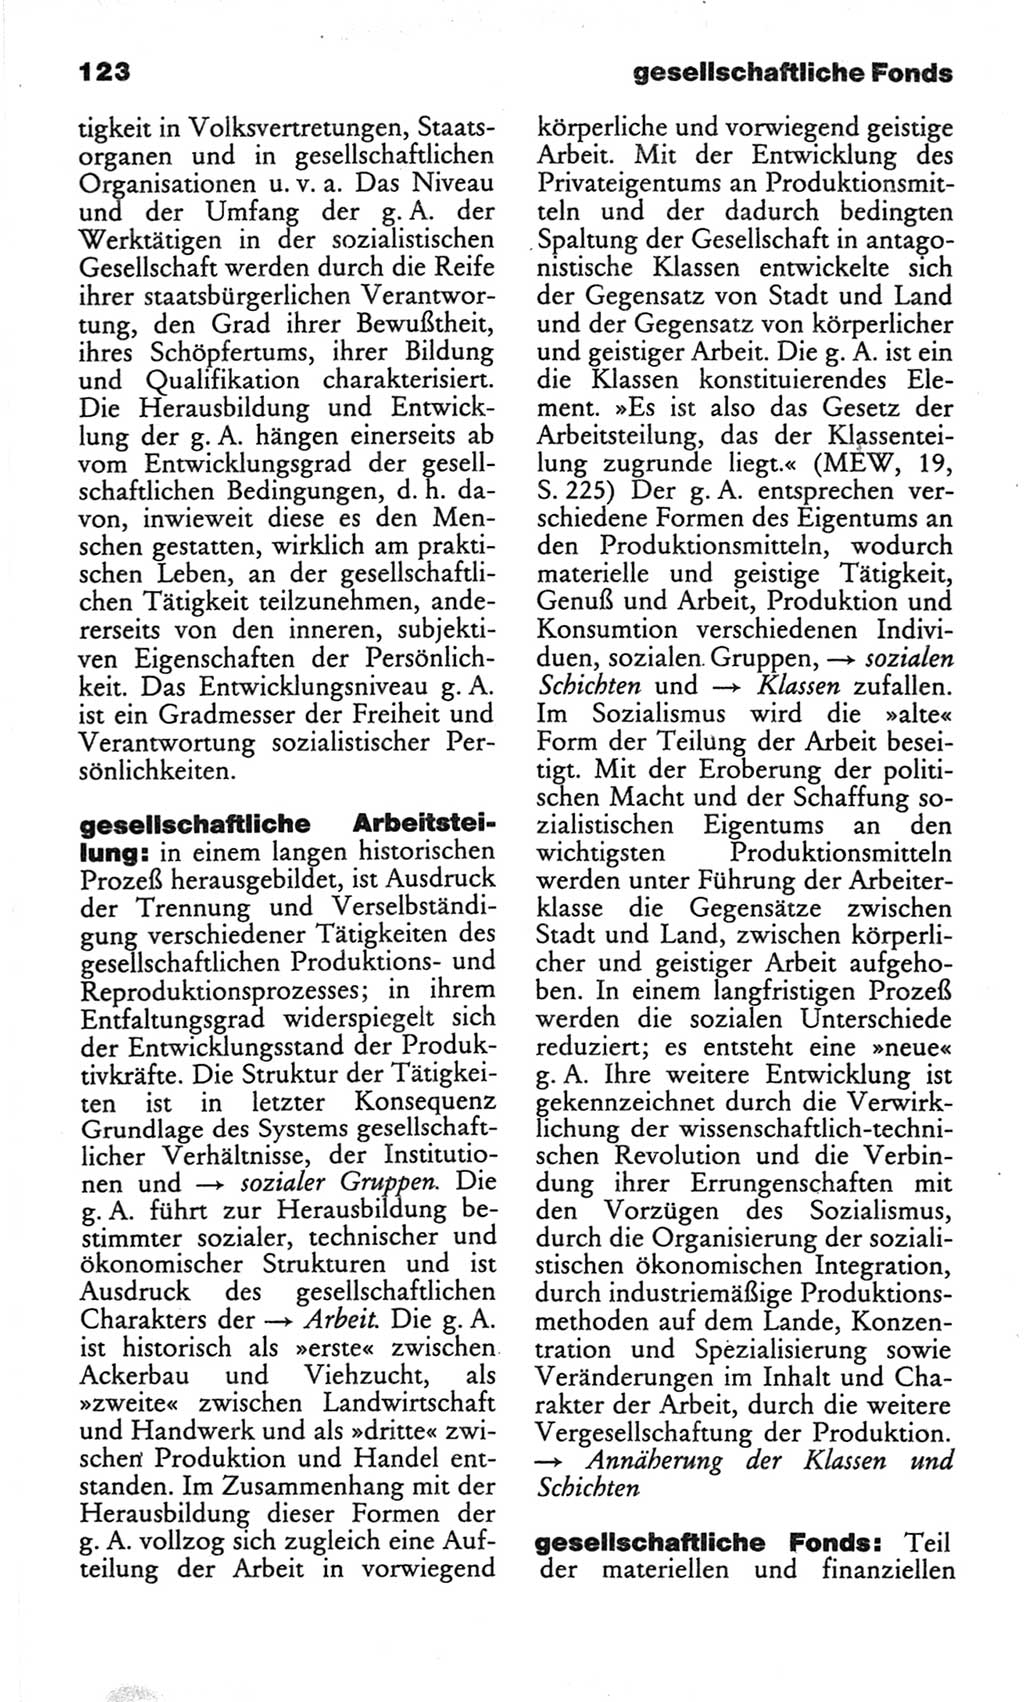 Wörterbuch des wissenschaftlichen Kommunismus [Deutsche Demokratische Republik (DDR)] 1982, Seite 123 (Wb. wiss. Komm. DDR 1982, S. 123)